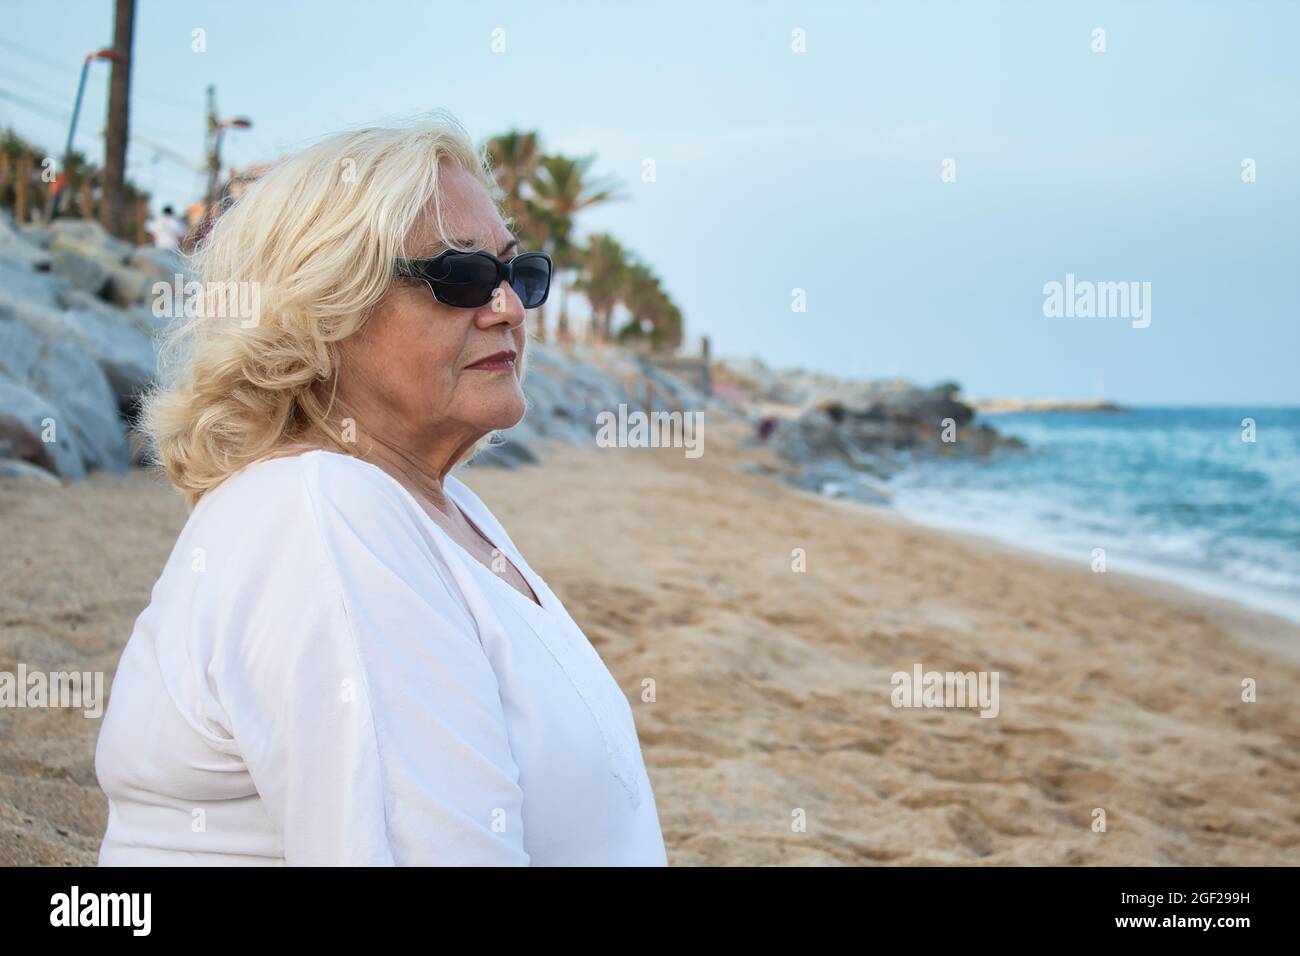 femme mature en lunettes de soleil assise seule sur la plage au bord de la mer dans une robe blanche Banque D'Images